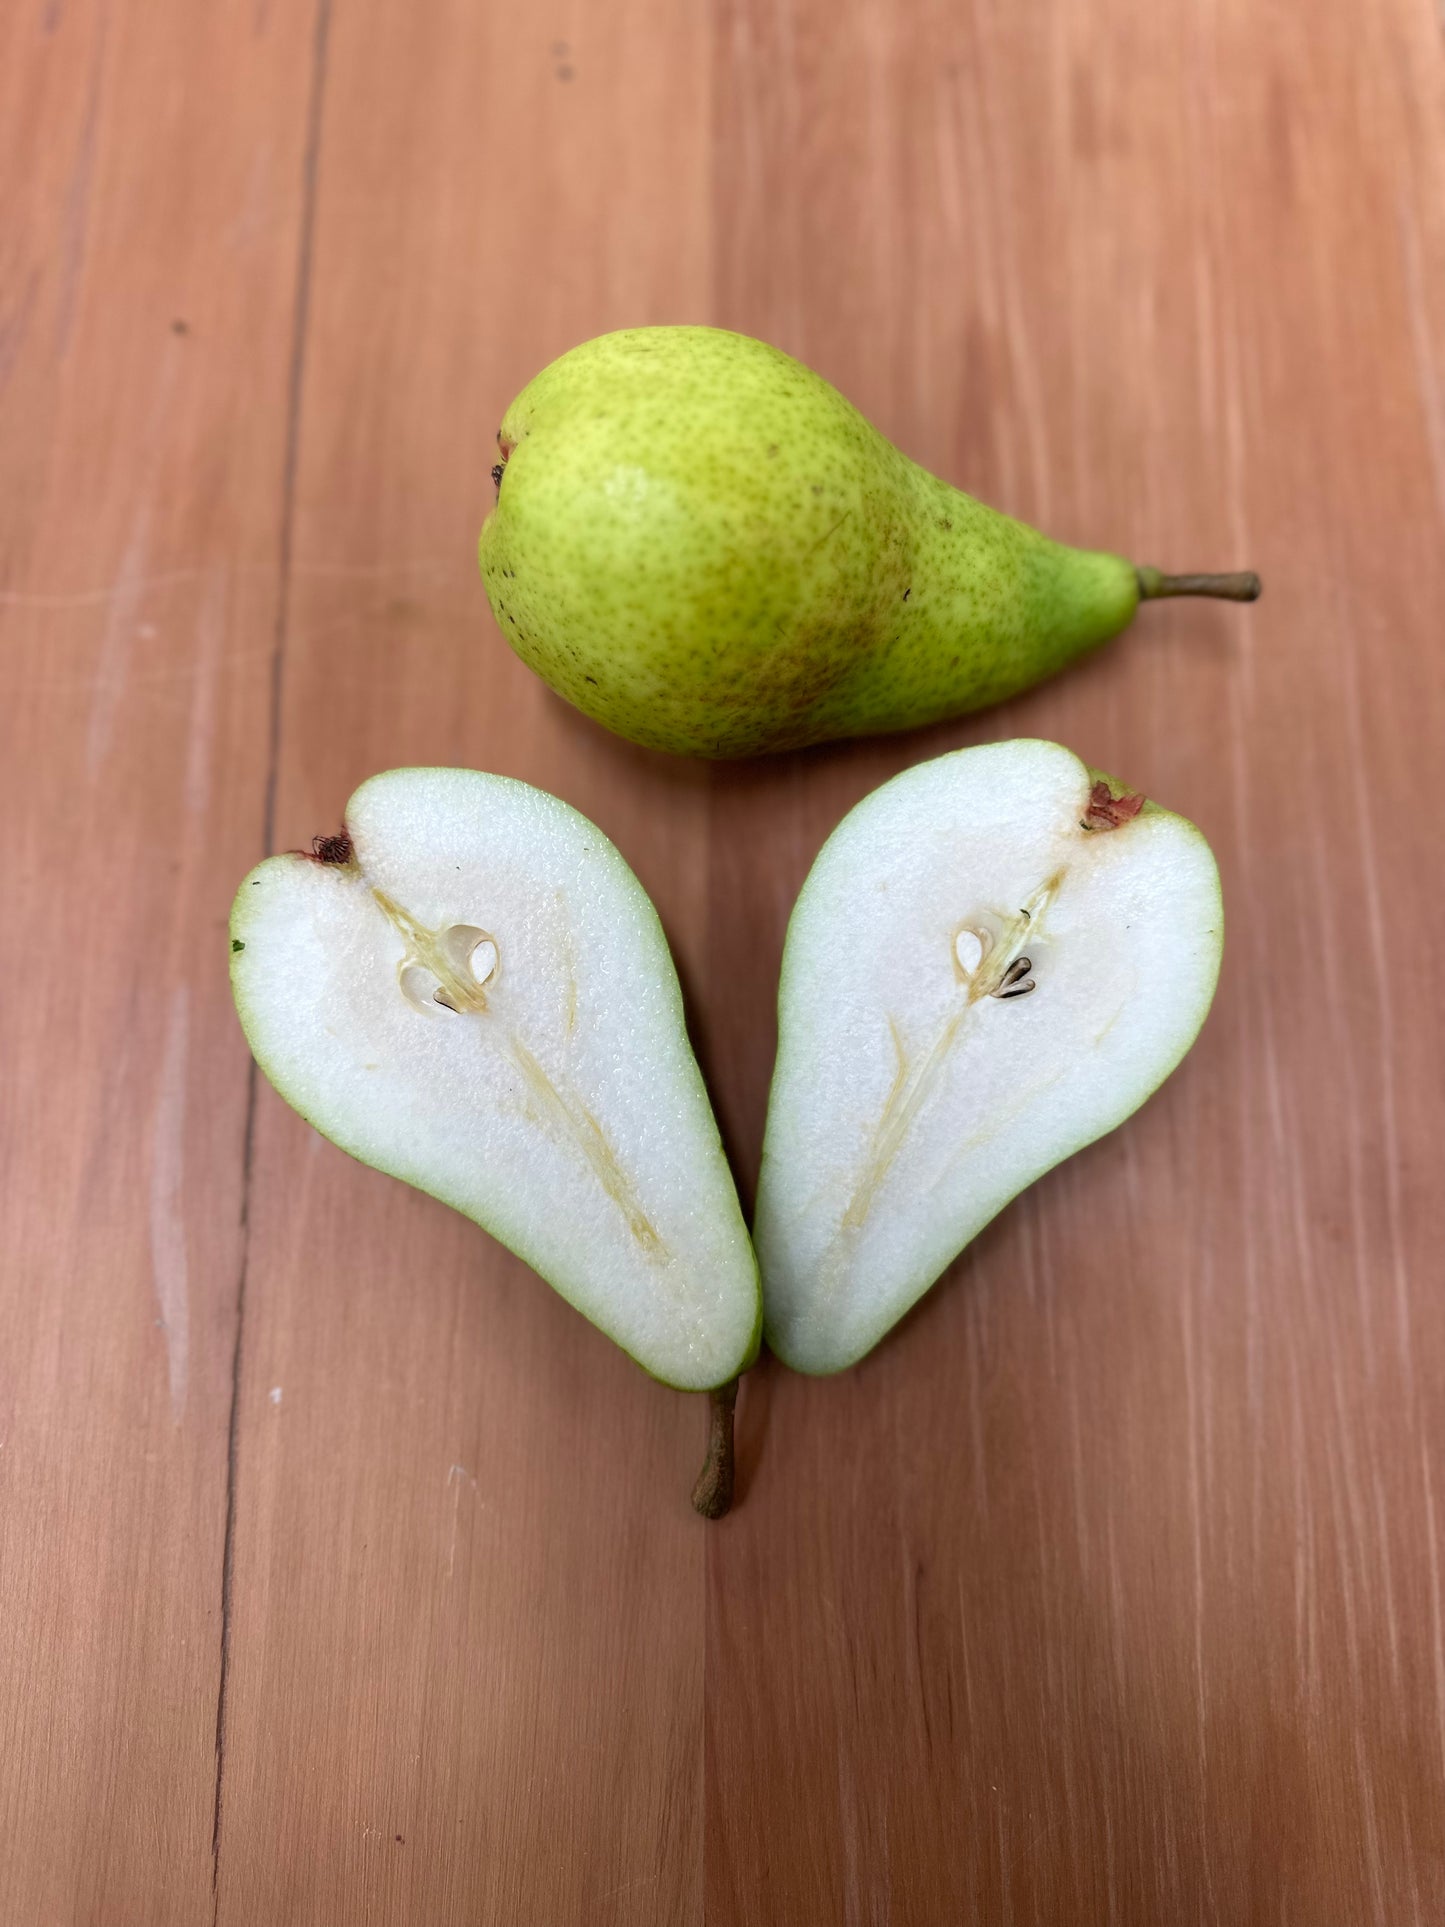 Pear - Sugar Belle *Best Fruit Buy*  KILO